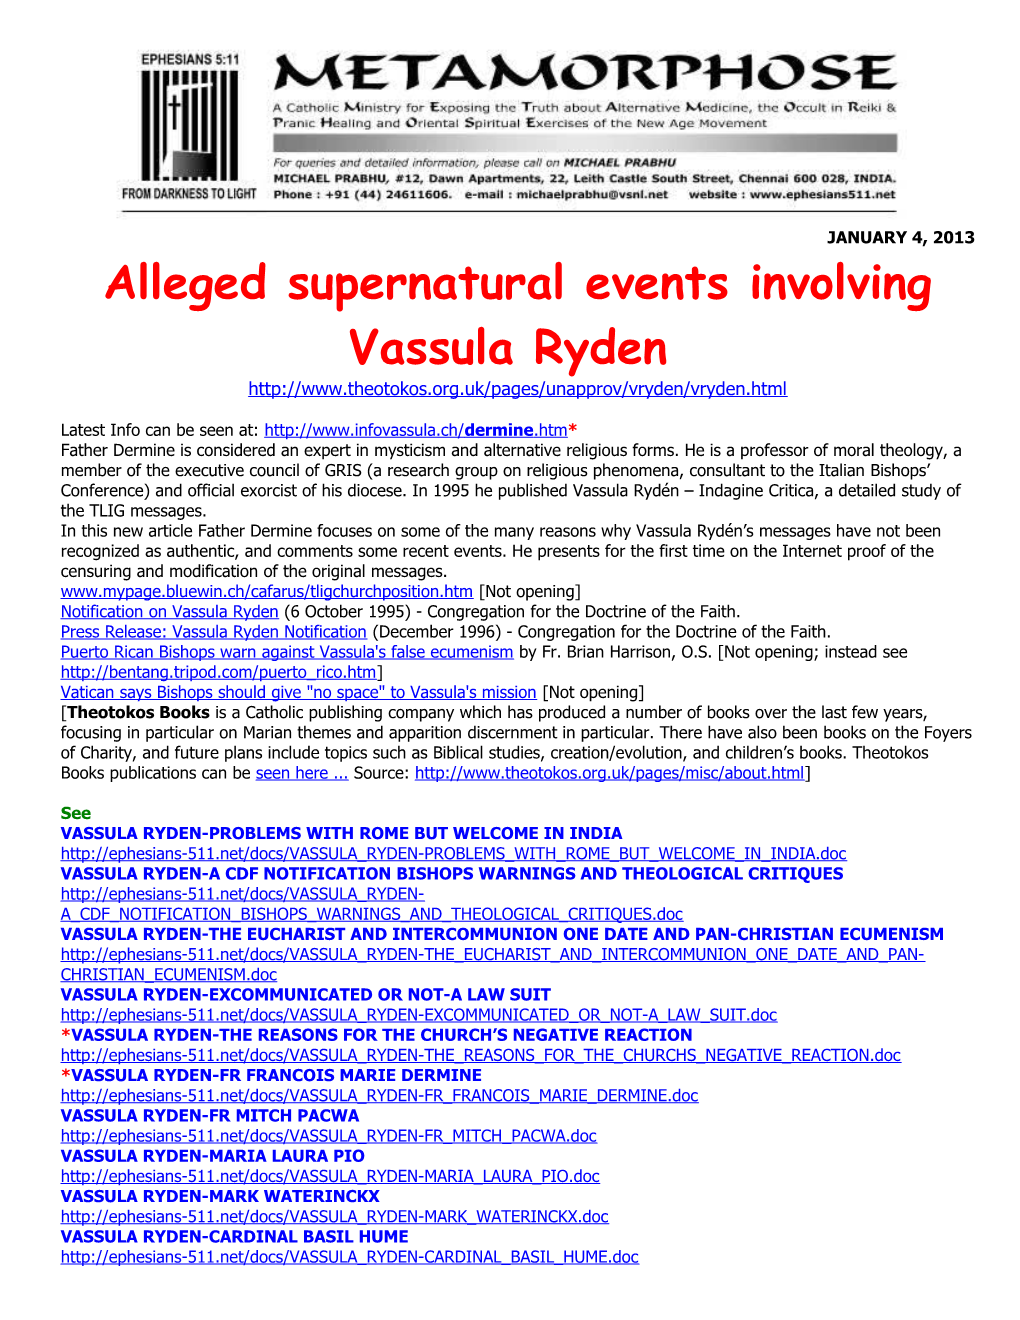 Alleged Supernatural Events Involving Vassula Ryden